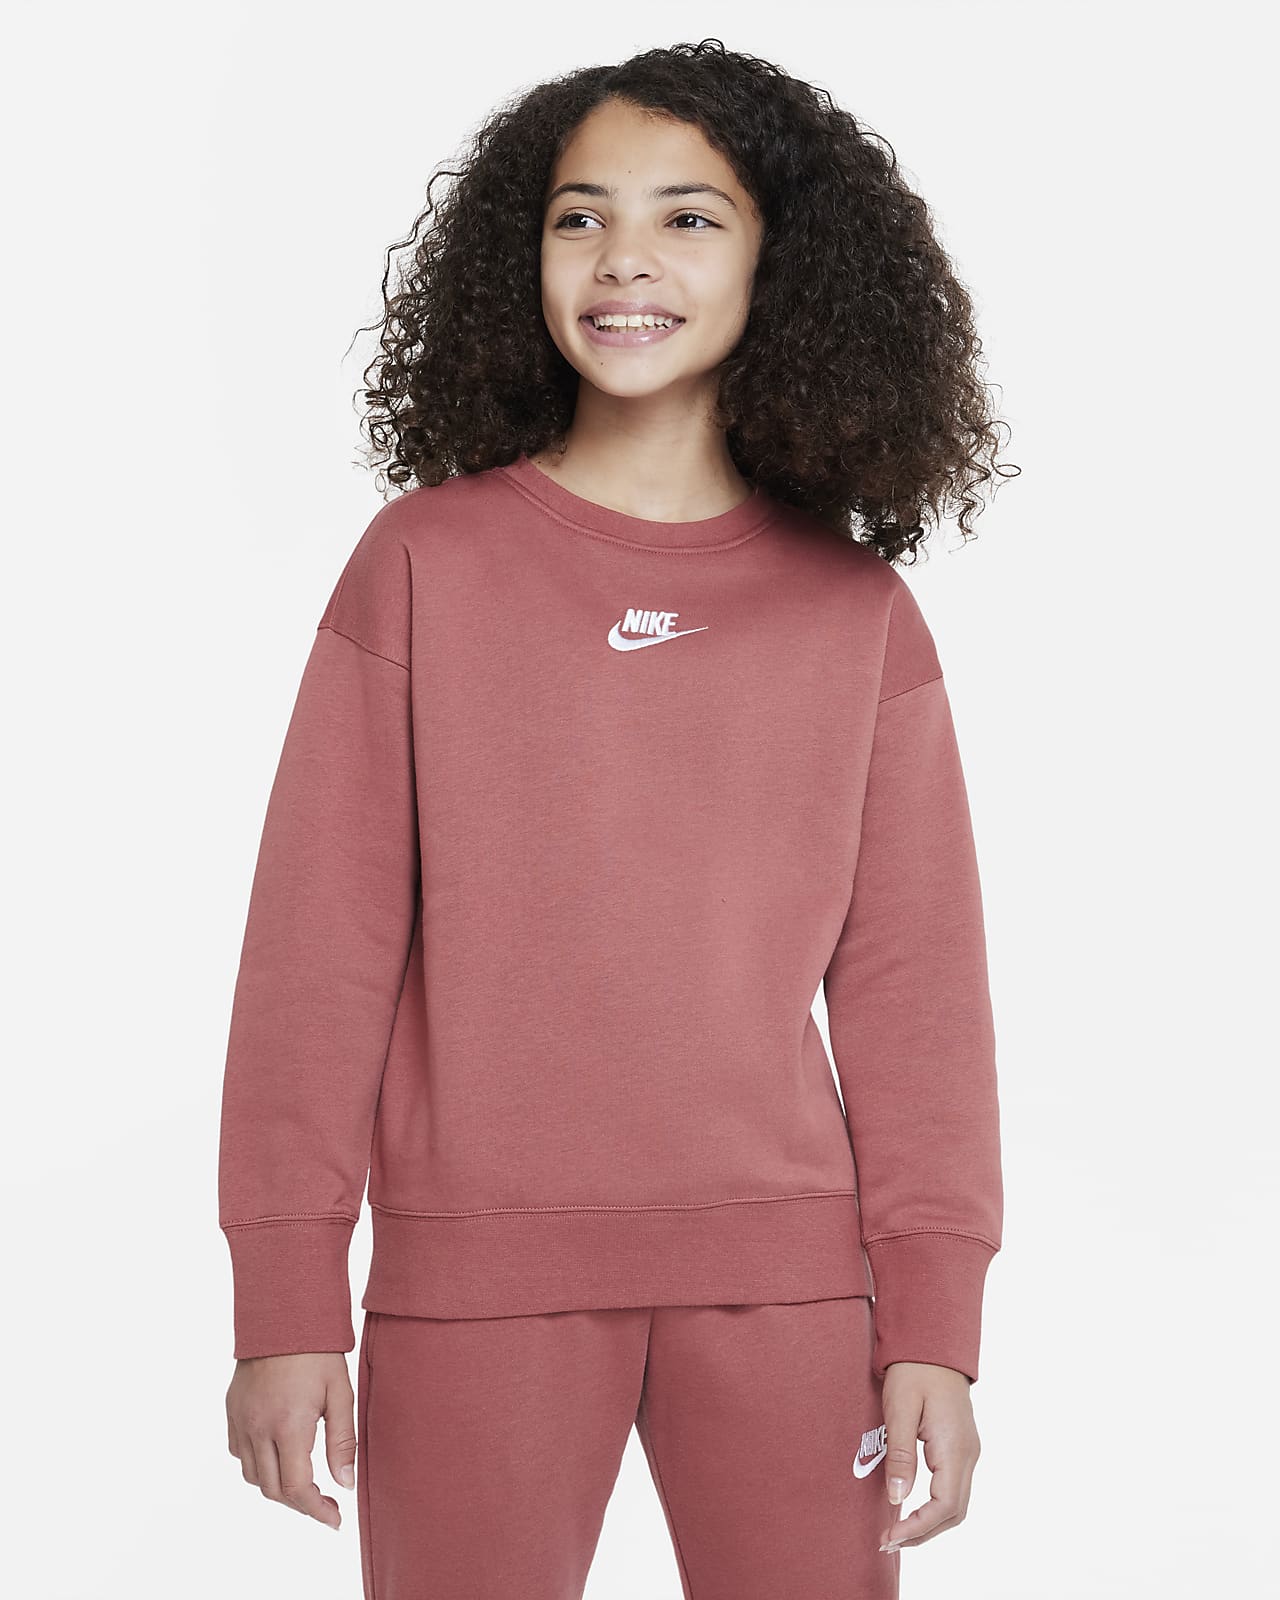 Nike Sportswear Club Fleece Rundhals-Sweatshirt für ältere Kinder (Mädchen)